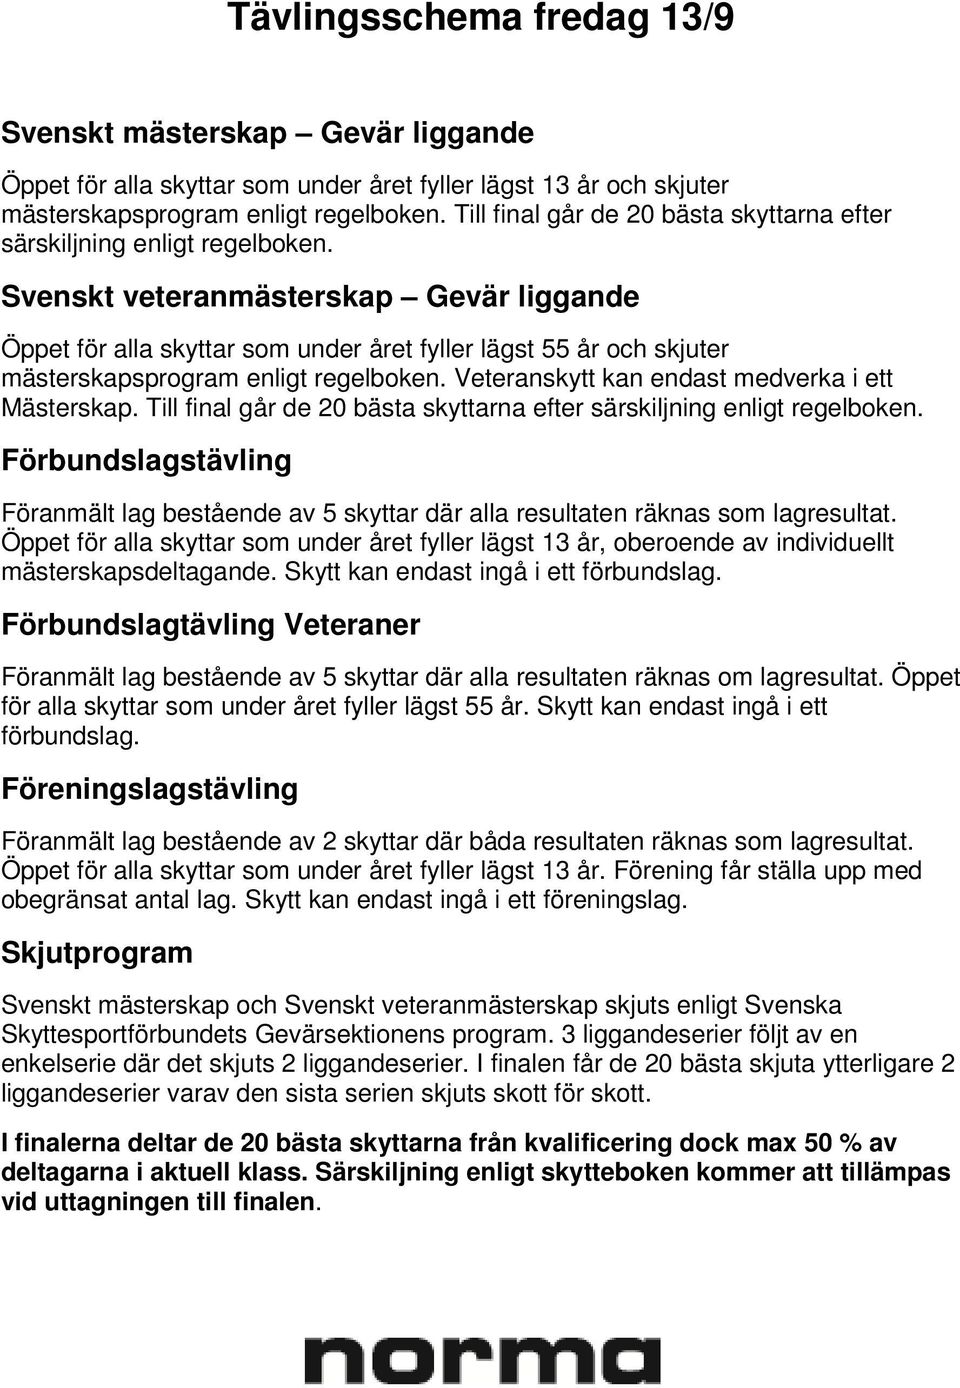 Svenskt veteranmästerskap Gevär liggande Öppet för alla skyttar som under året fyller lägst 55 år och skjuter mästerskapsprogram enligt regelboken. Veteranskytt kan endast medverka i ett Mästerskap.